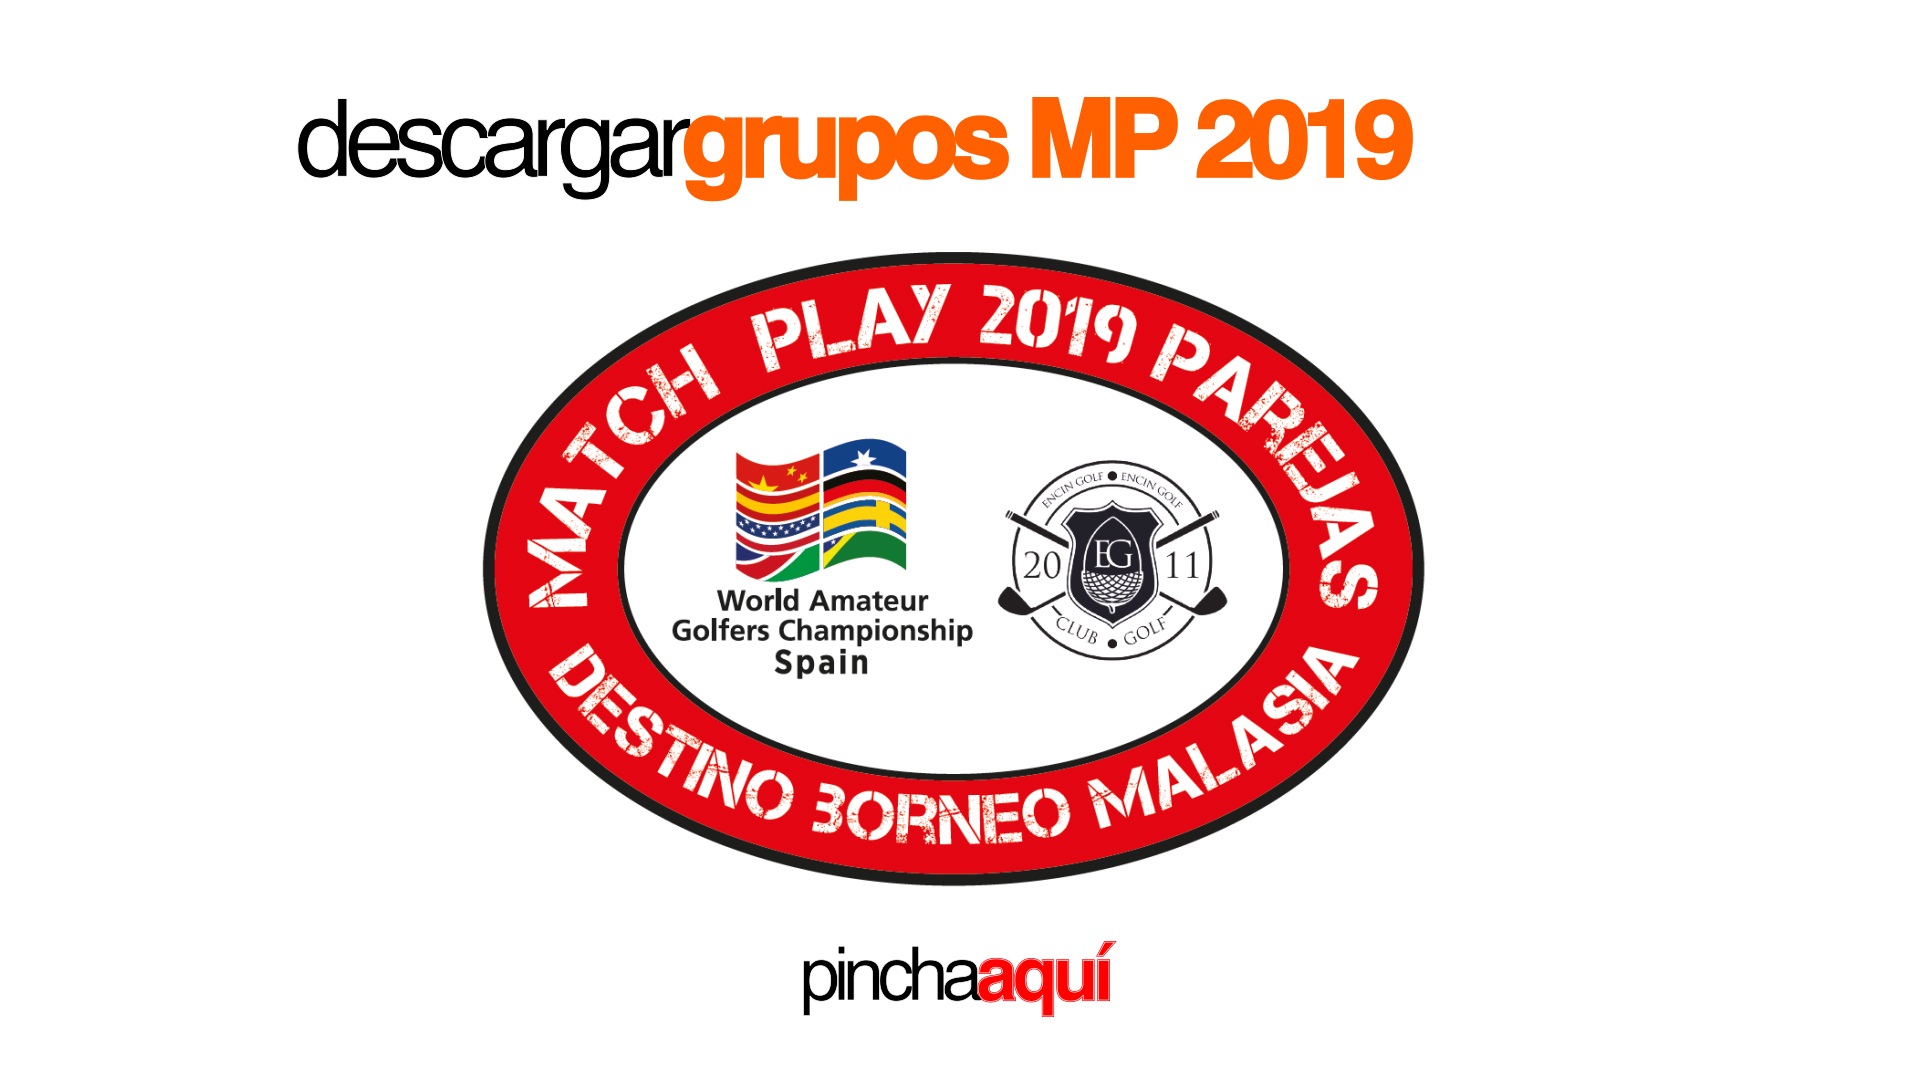 Joaquín Molpeceres Match Play 2019 - WAGC Spain